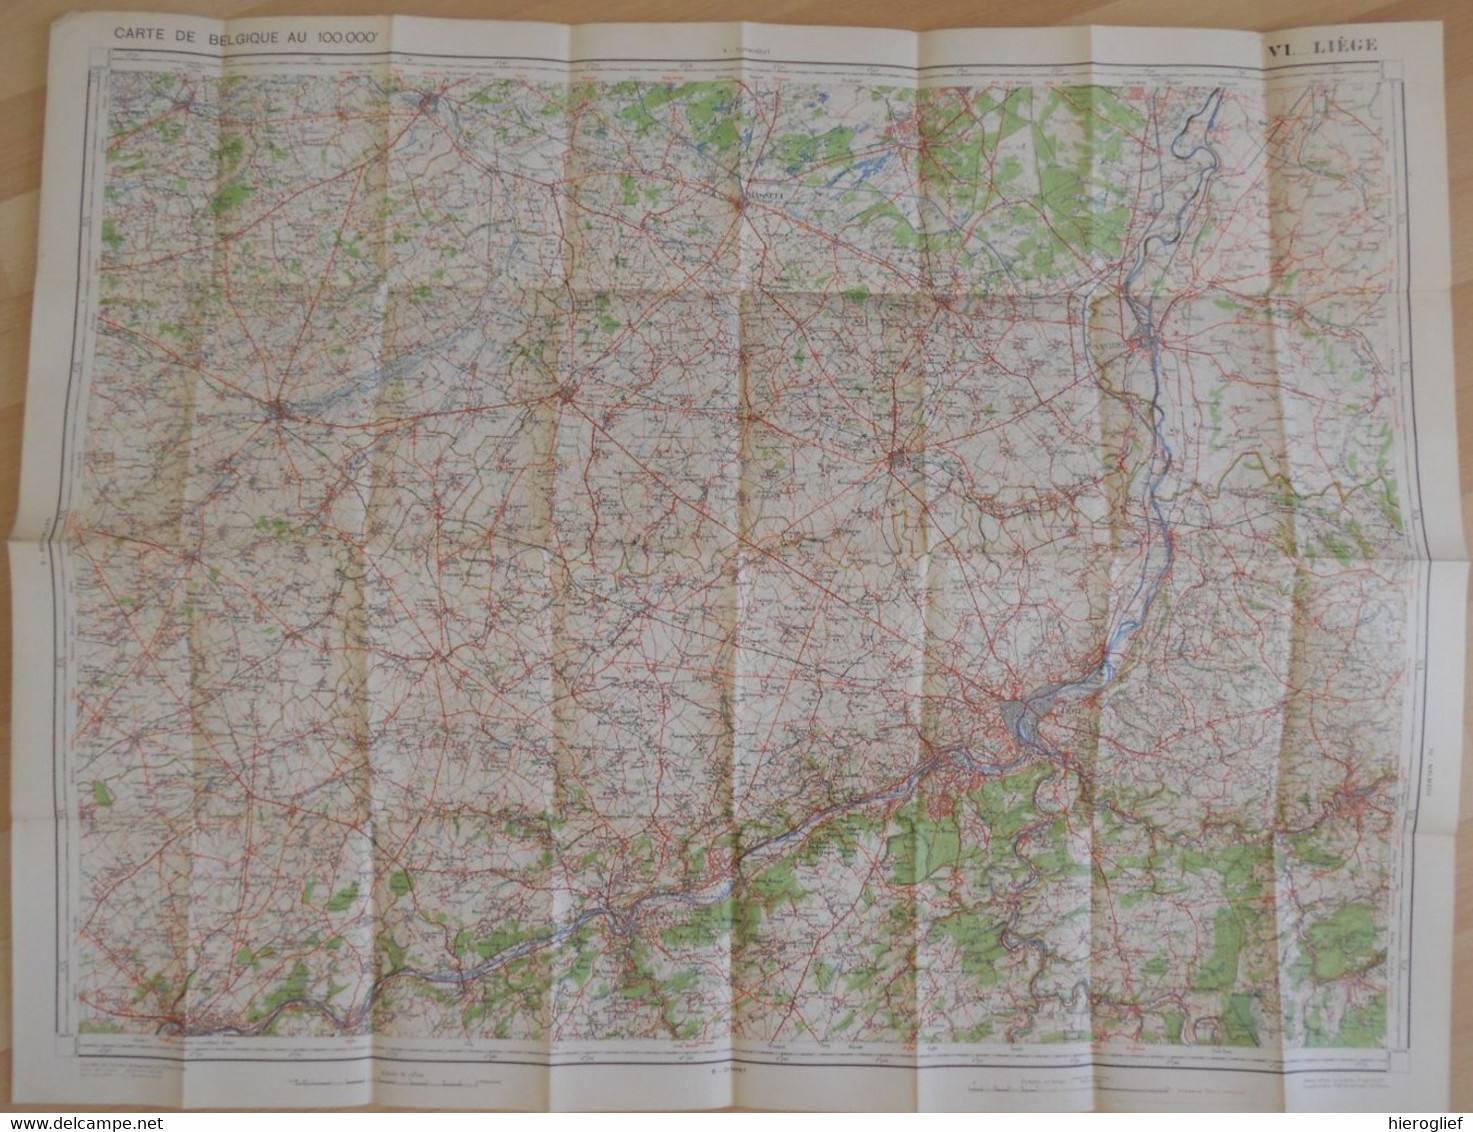 Carte De BELGIQUE Nr 6 LIEGE Institut Cartographique Militaire Impression Litho 1933 Maastricht Hasselt Tongeren Tienen - Topographische Kaarten